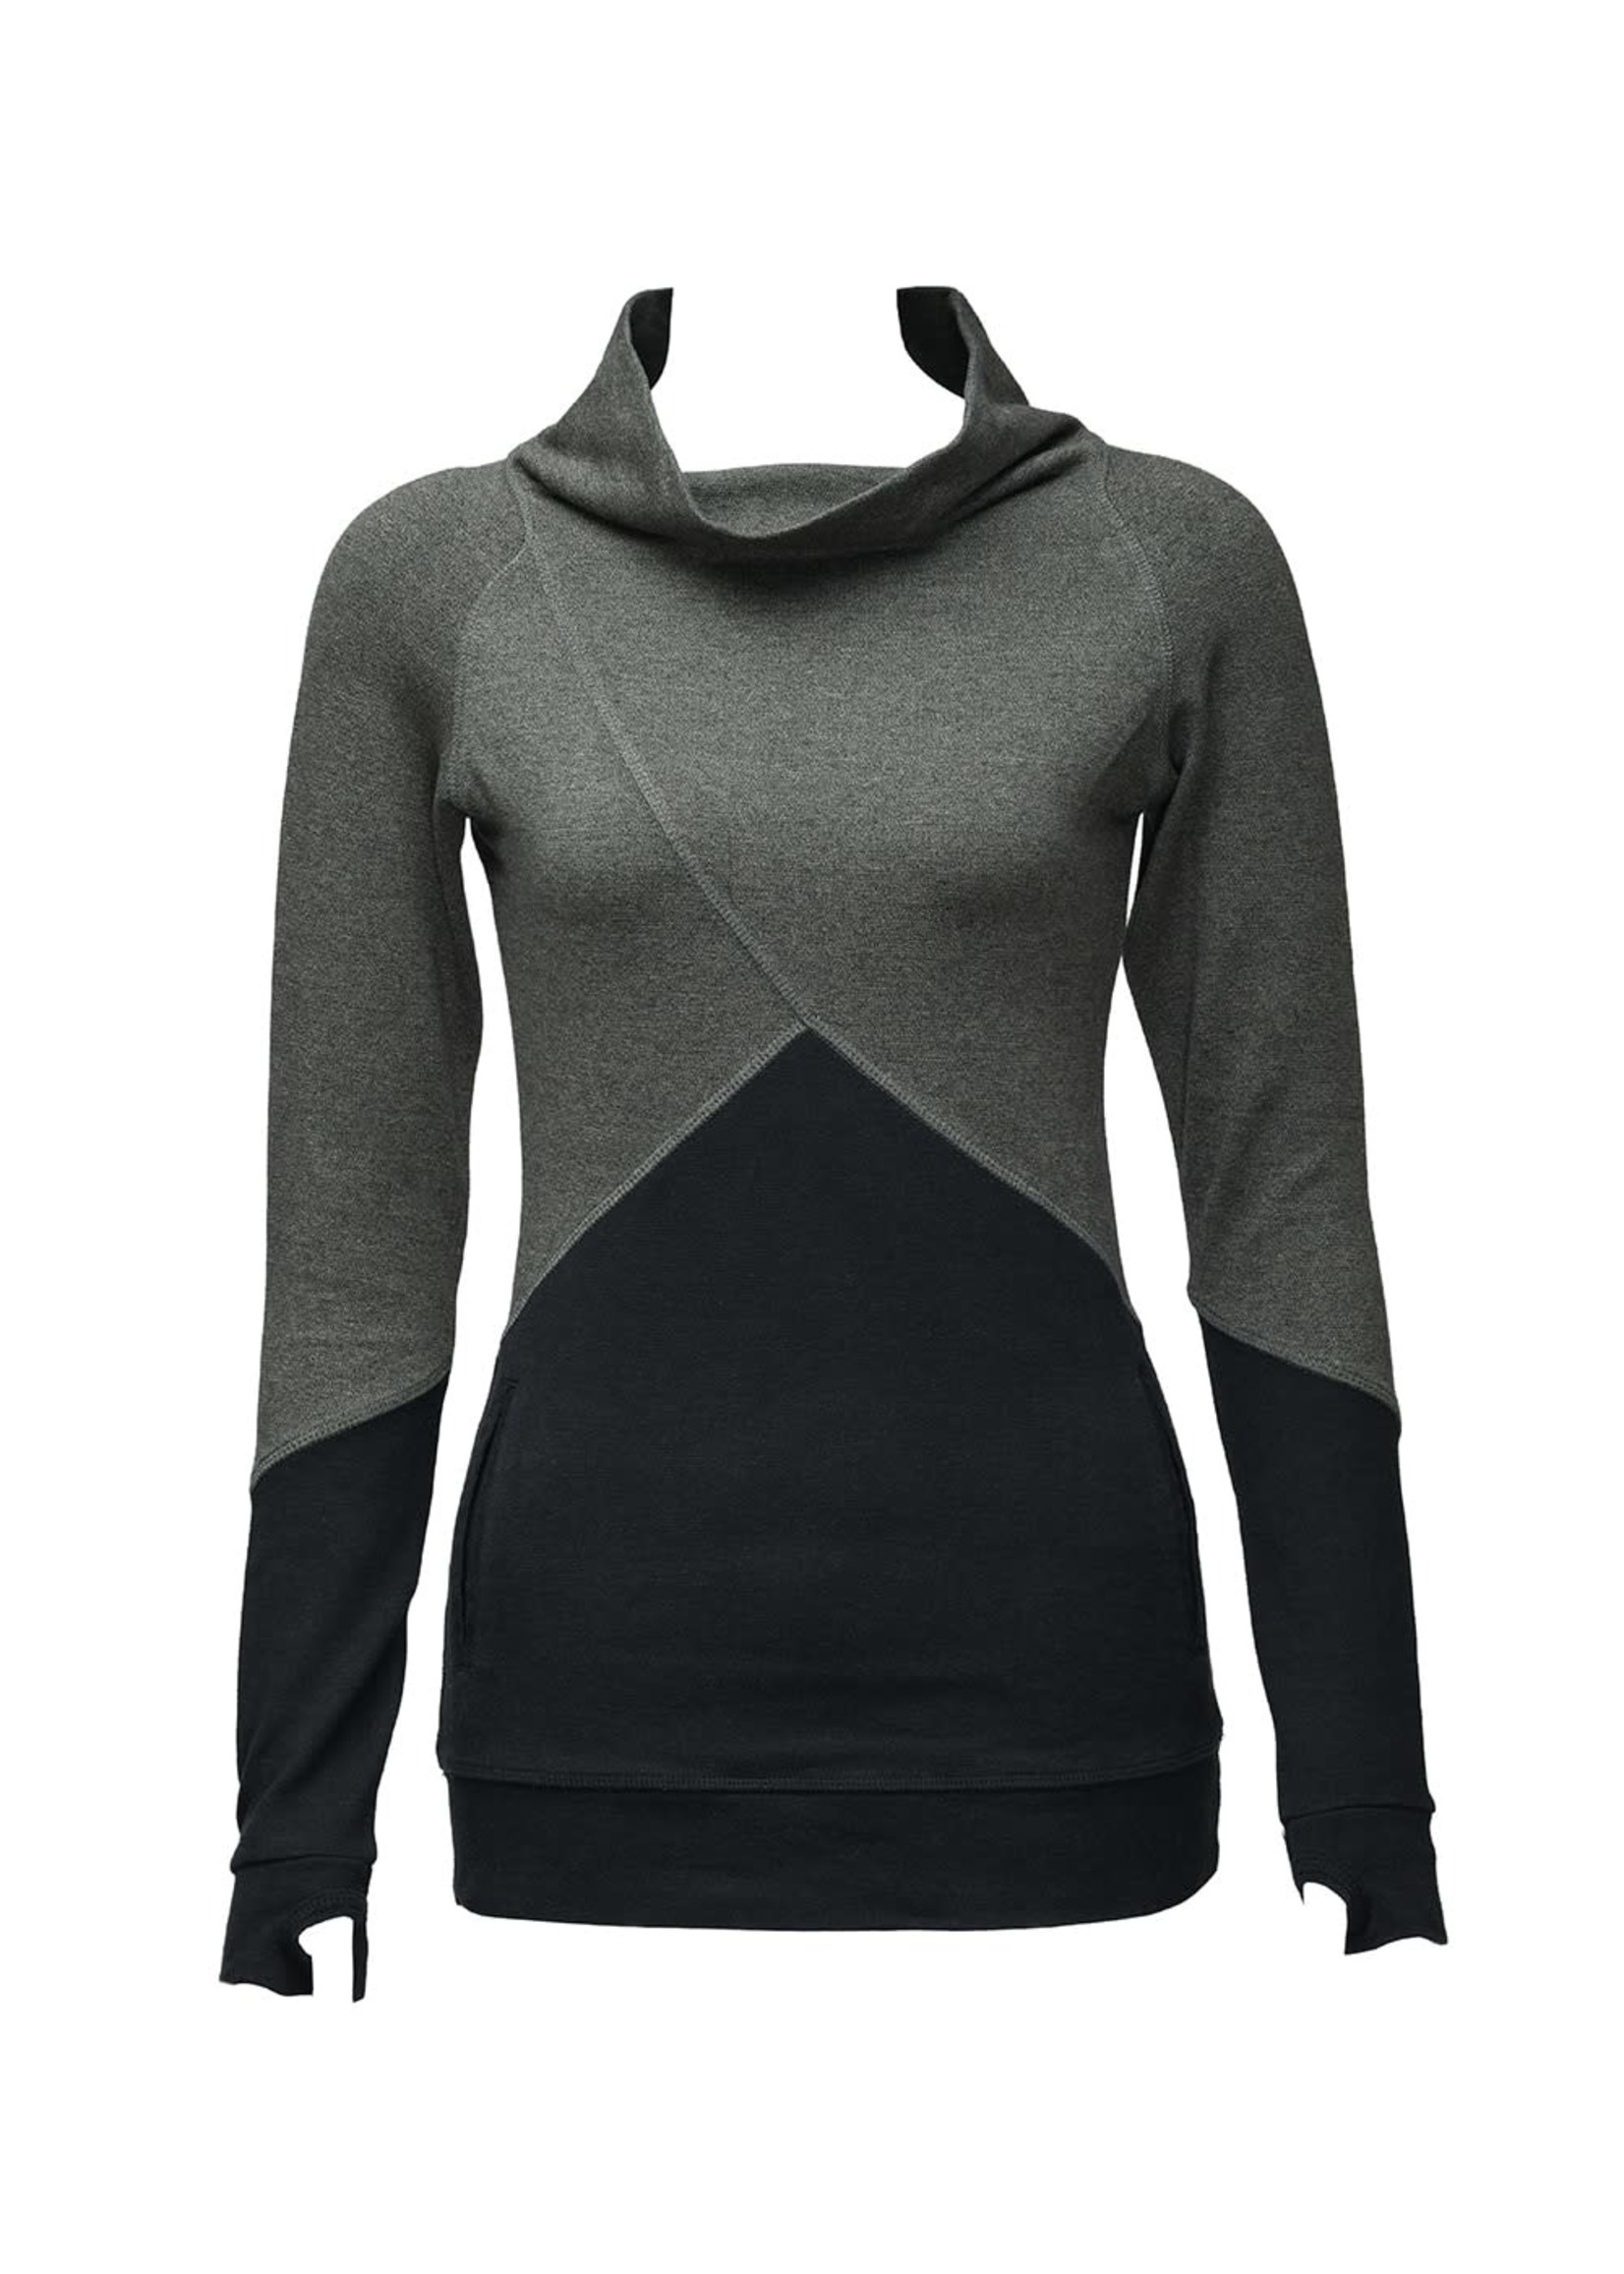 Nomads Hempwear Vertex Sweater